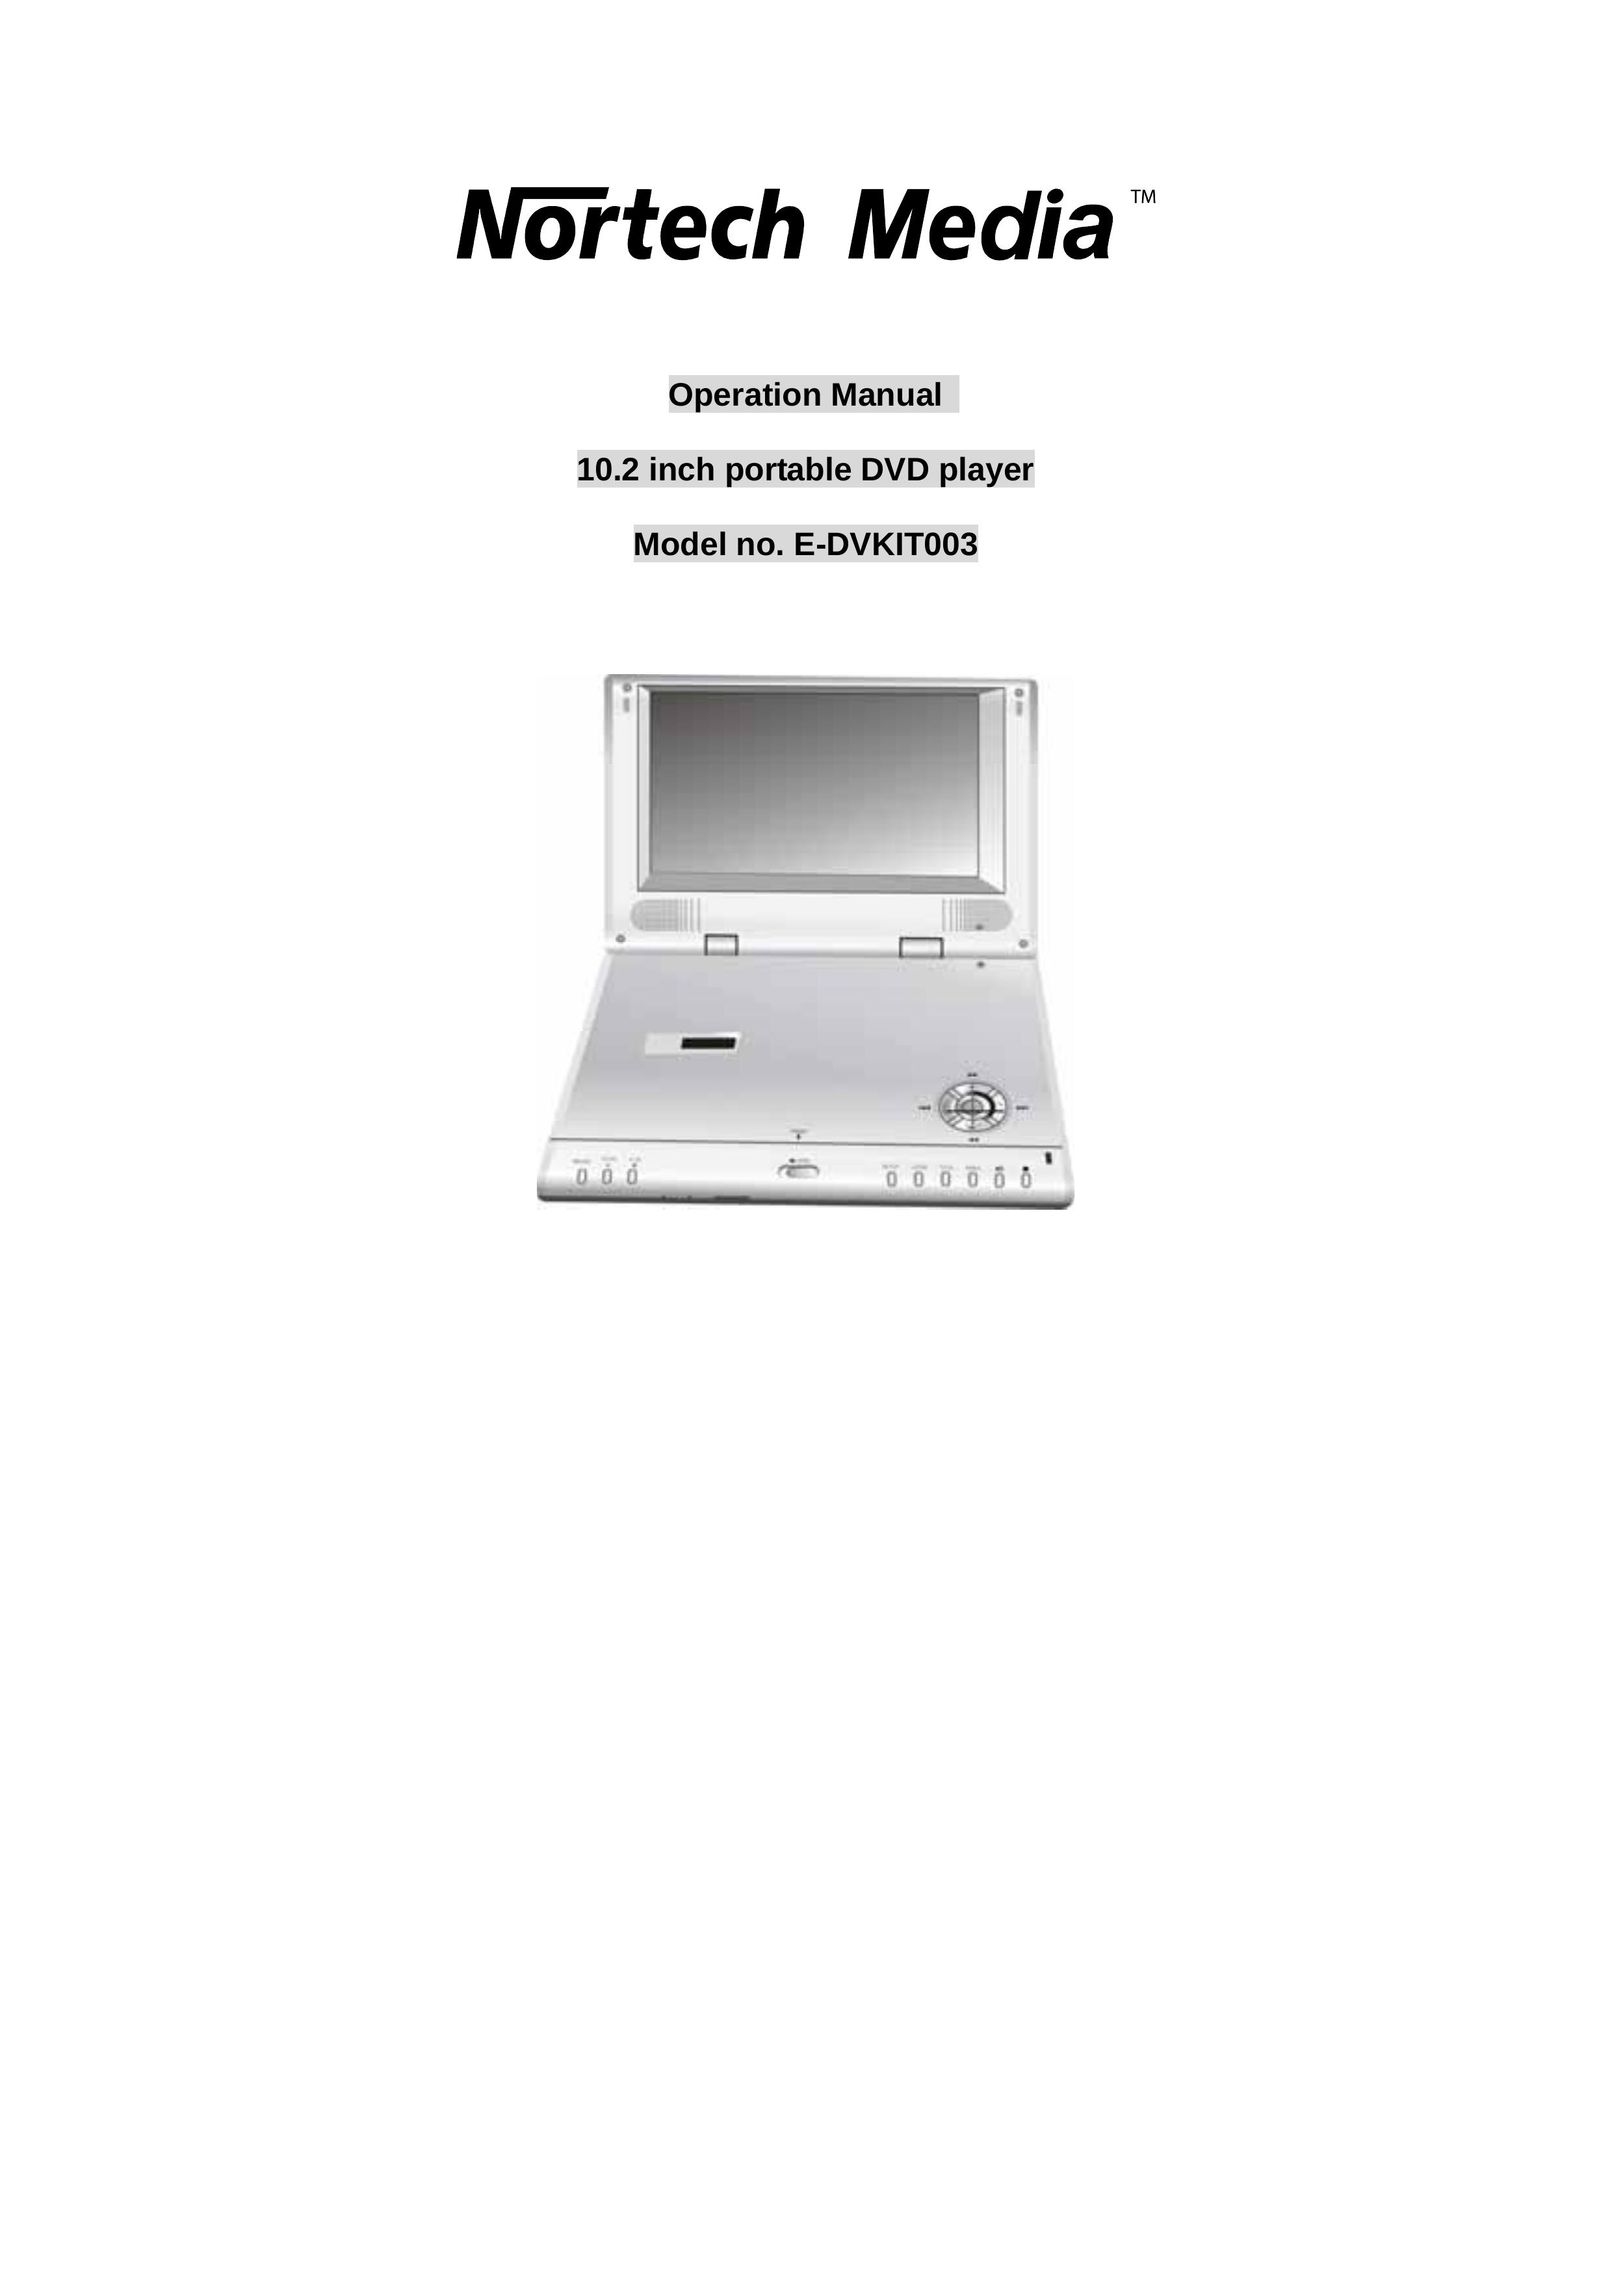 Nortech Systems nortech media 10.2 inch portable DVD player Portable DVD Player User Manual